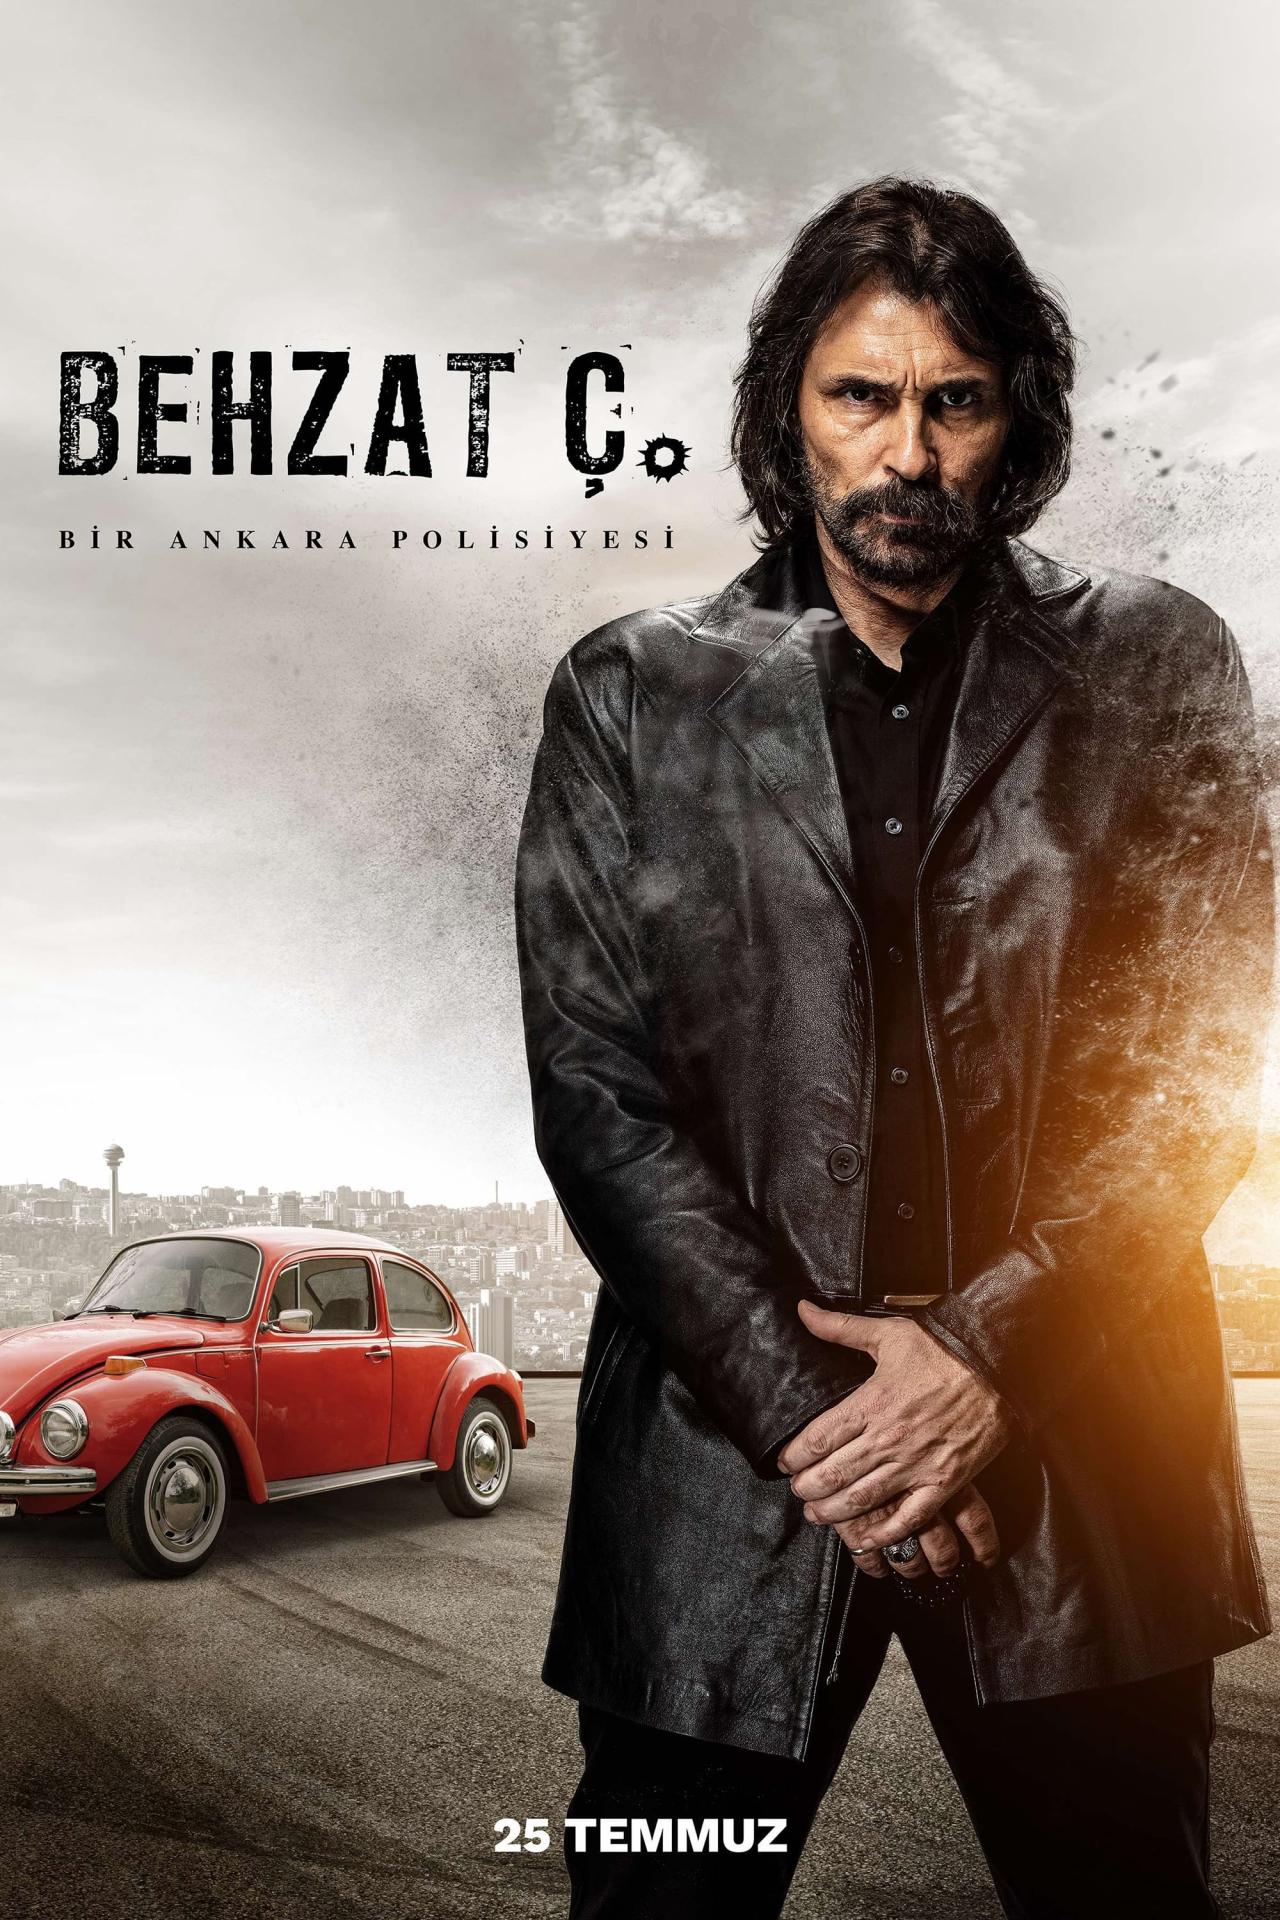 Les saisons de Behzat Ç.: Bir Ankara Polisiyesi sont-elles disponibles sur Netflix ou autre ?